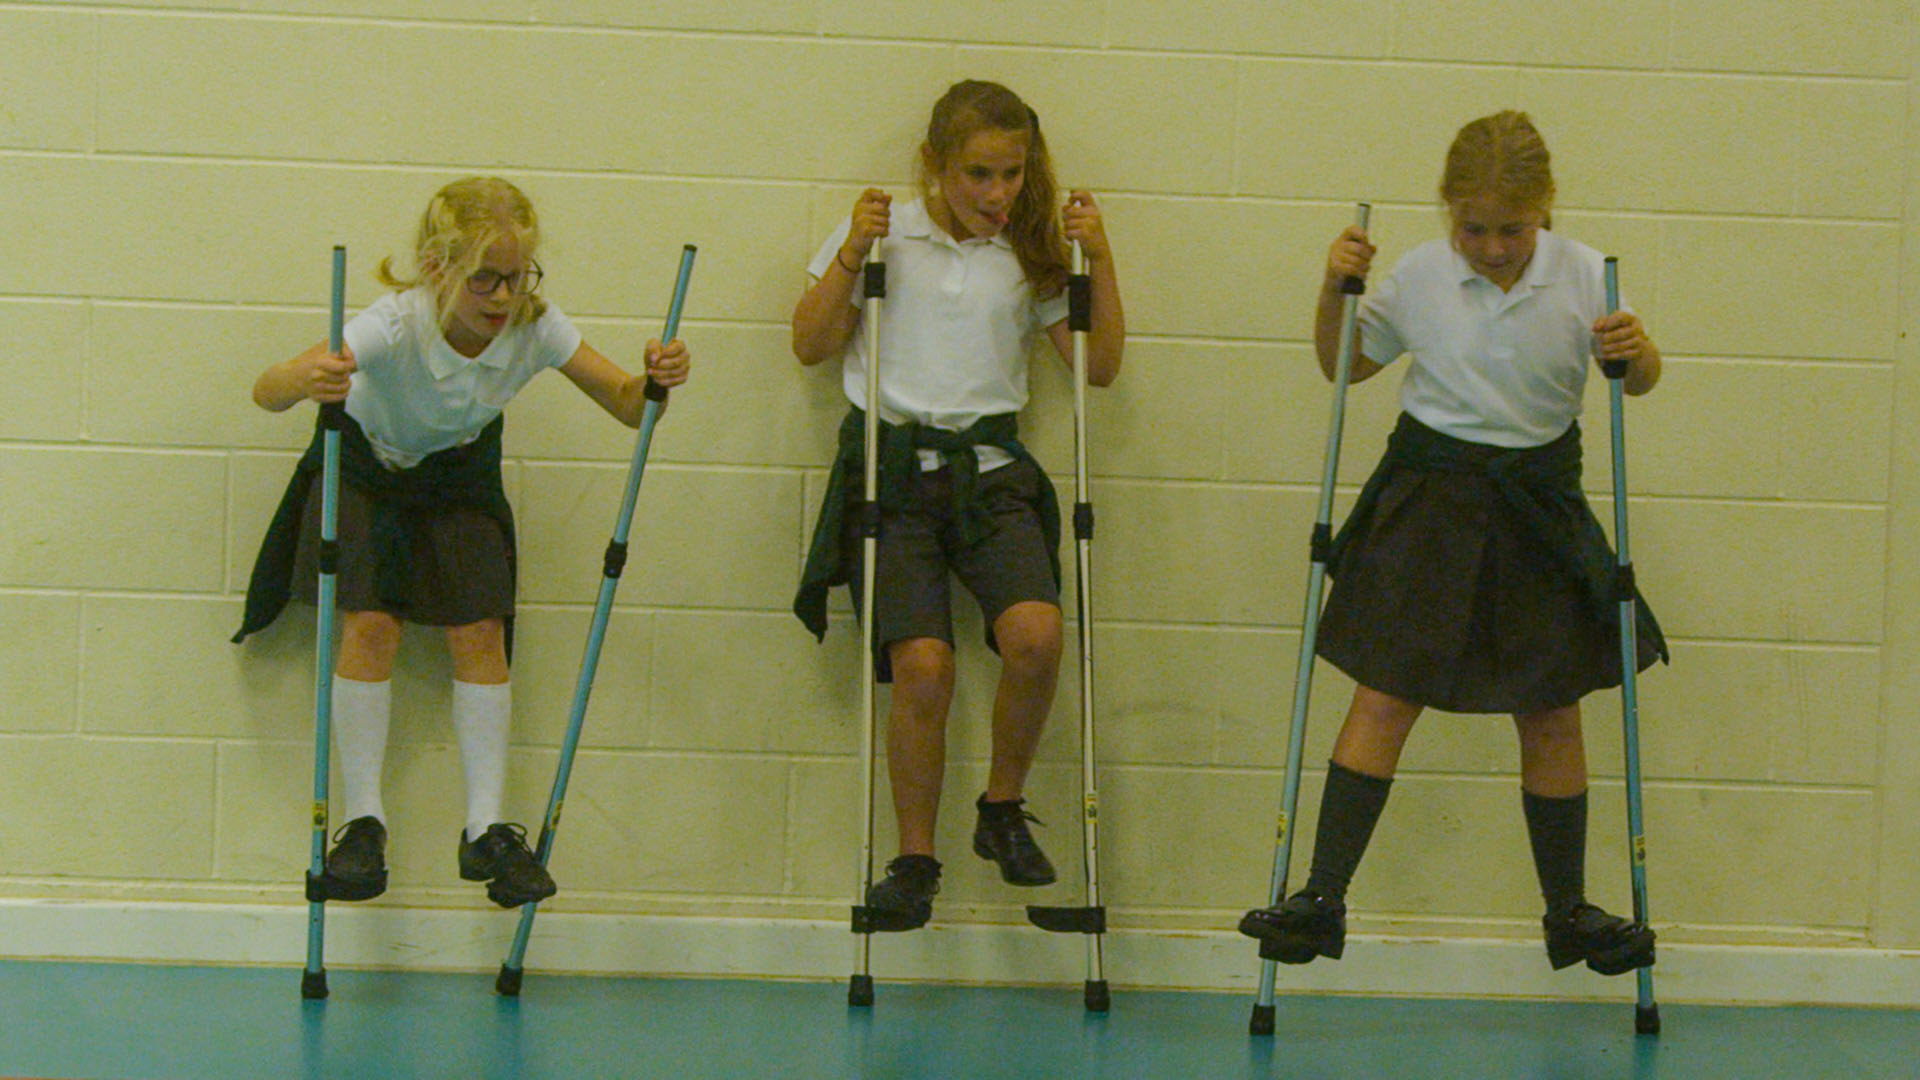 School children using stilts